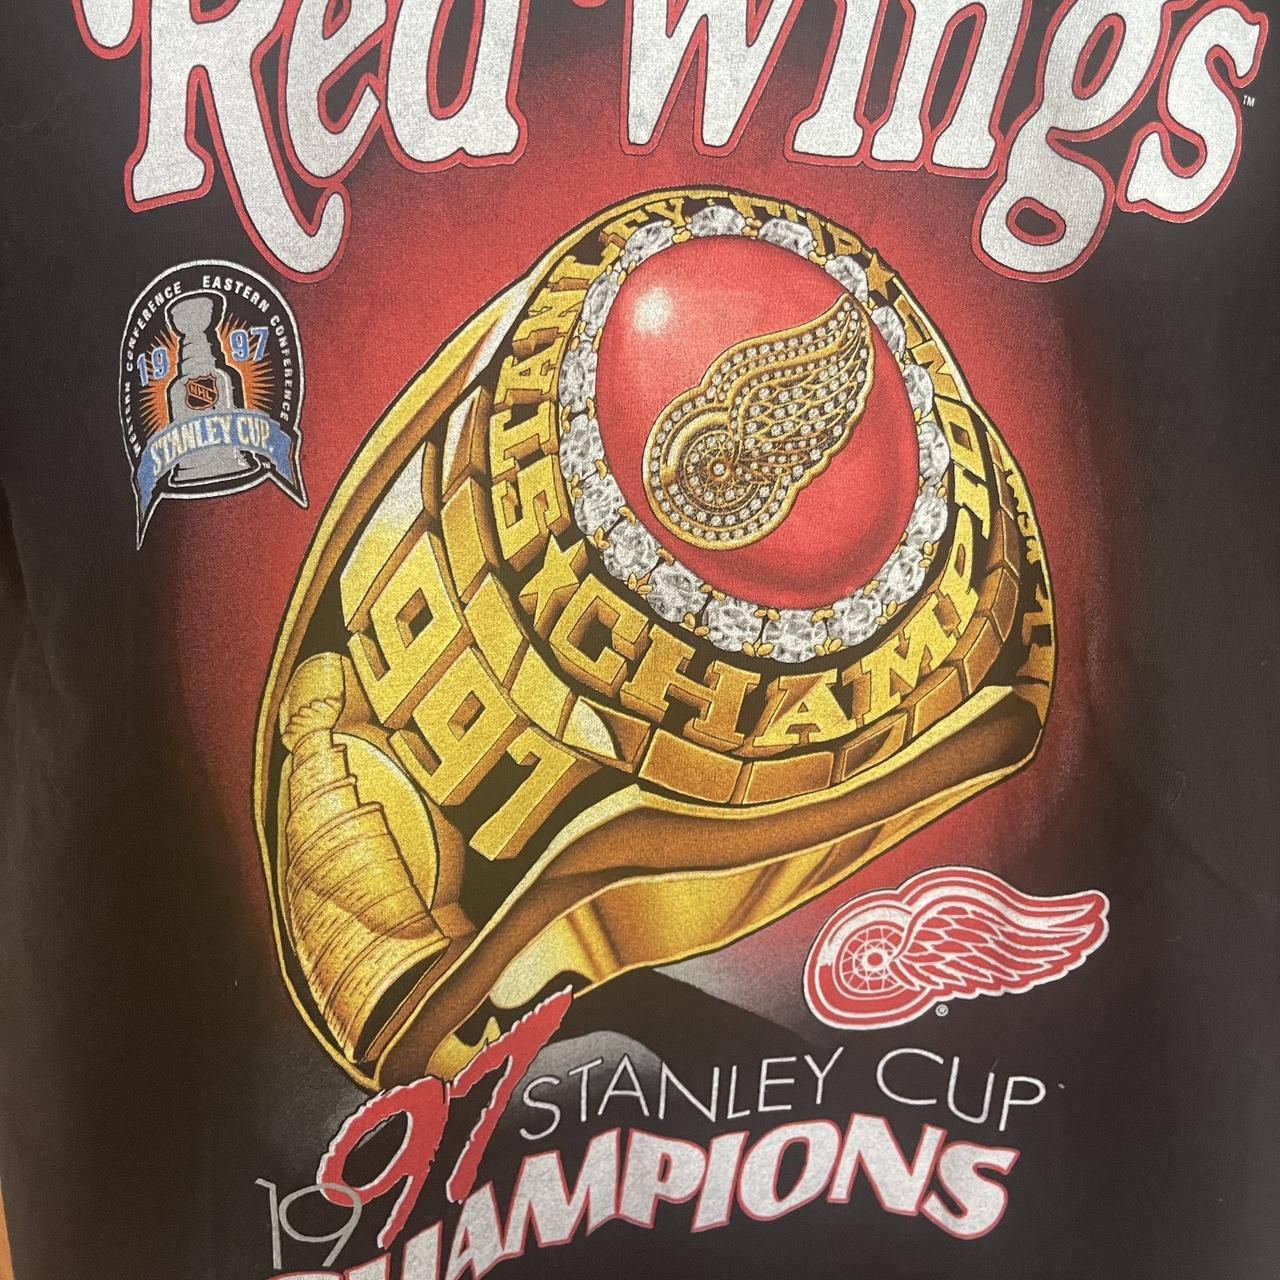 Vintage Detroit Red Wings Crewneck Sweatshirt Tag- - Depop